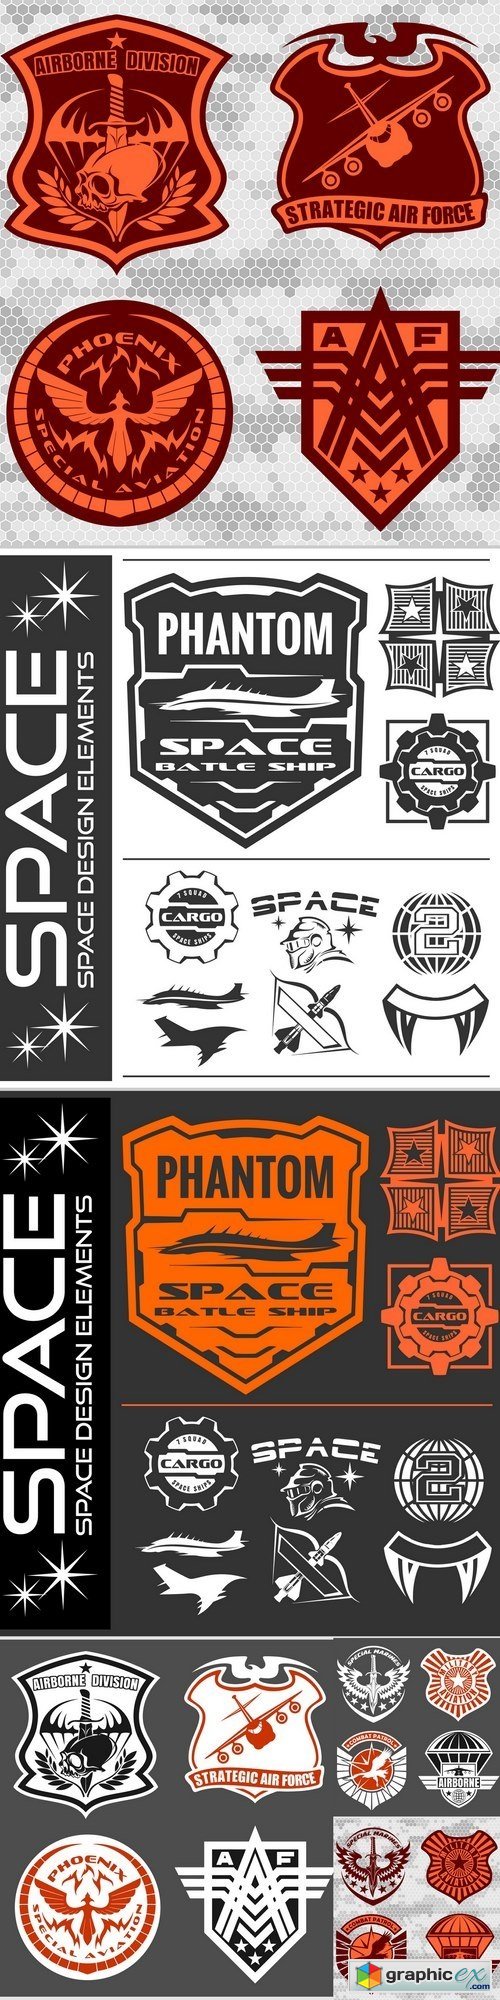 Set of space astronaut badges, emblems, labels